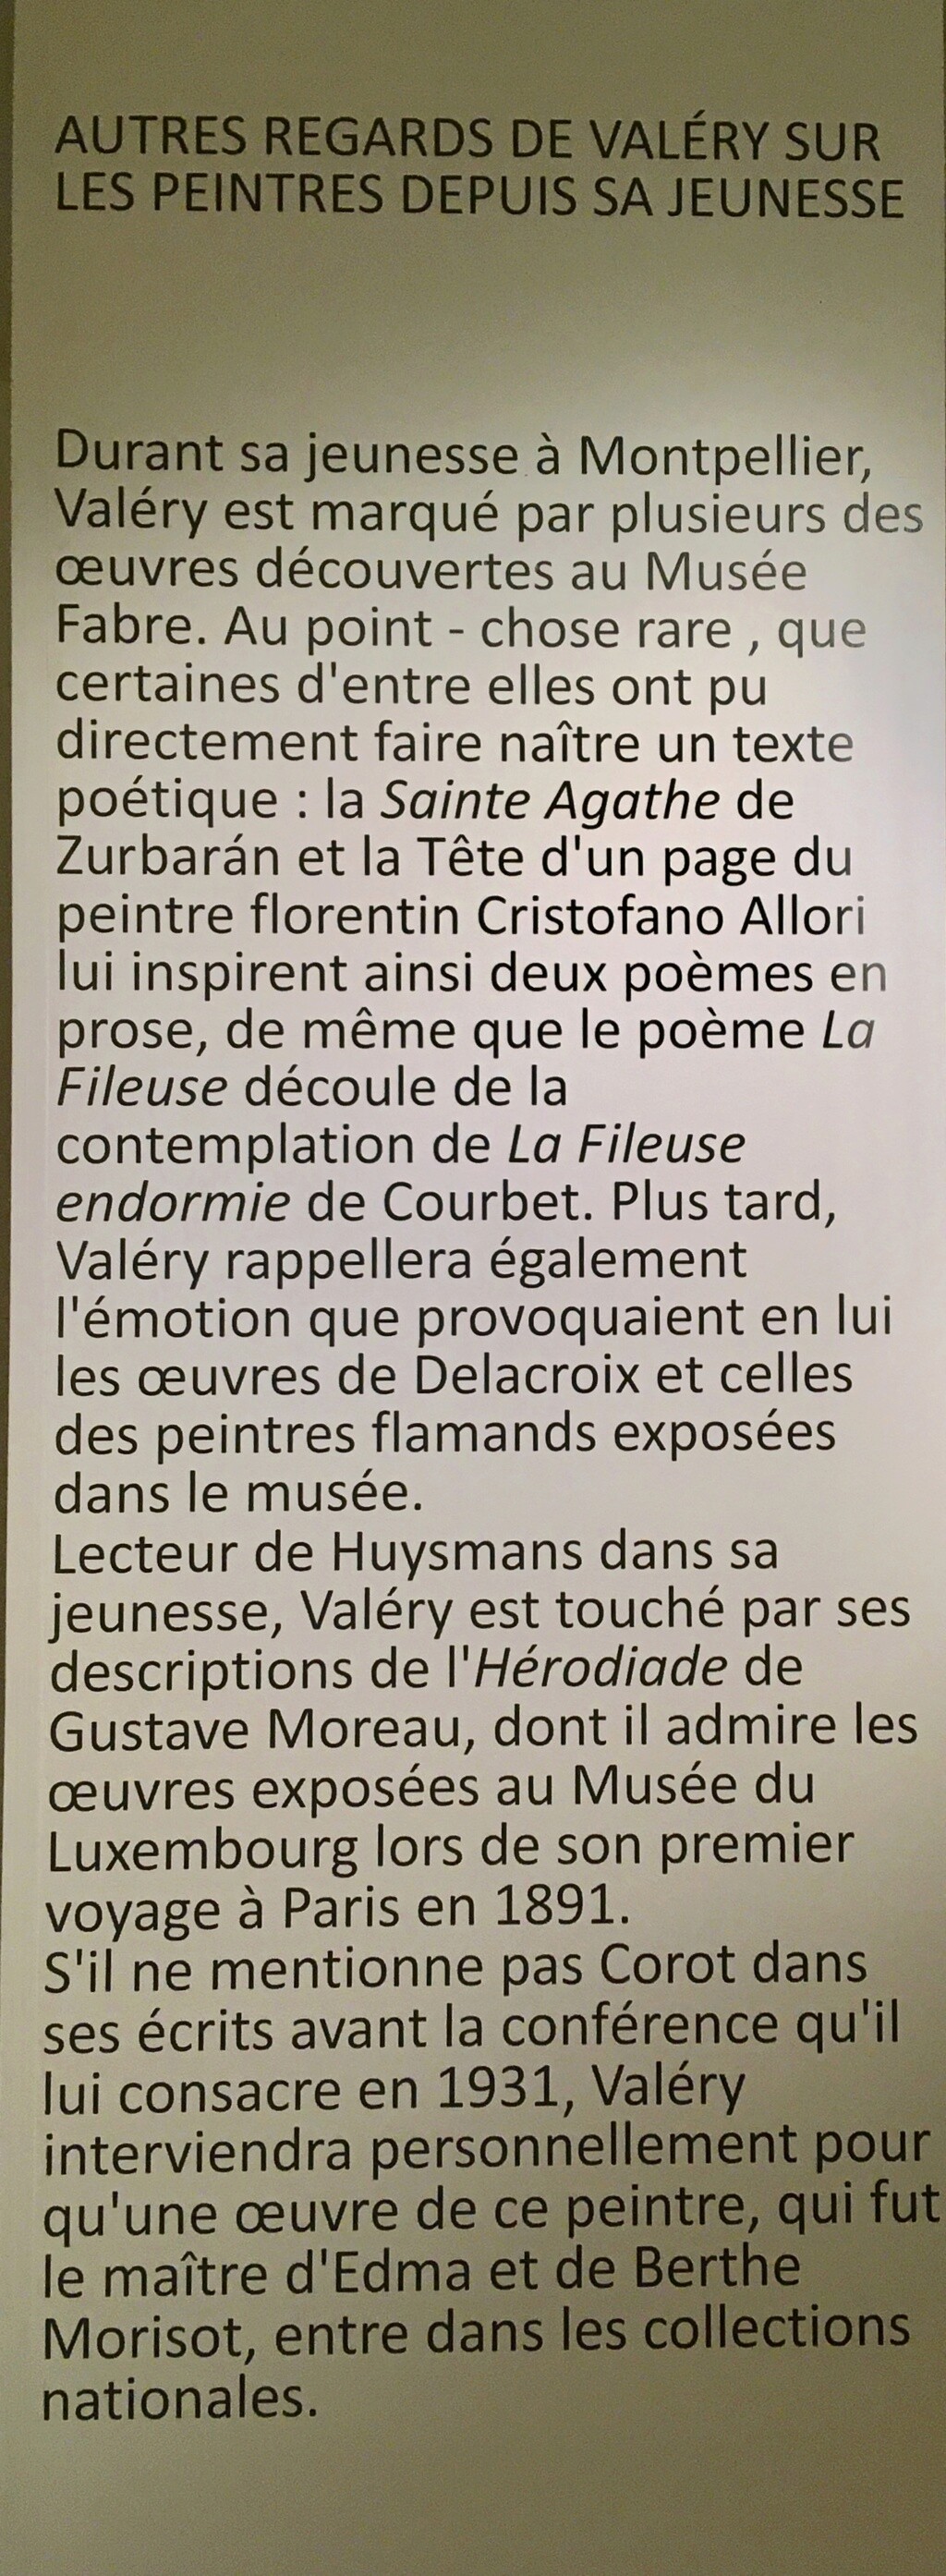 Musée Paul Valery à Sète : expo temporaire " Paul Valery et les peintres" - Page 2 Fulls108